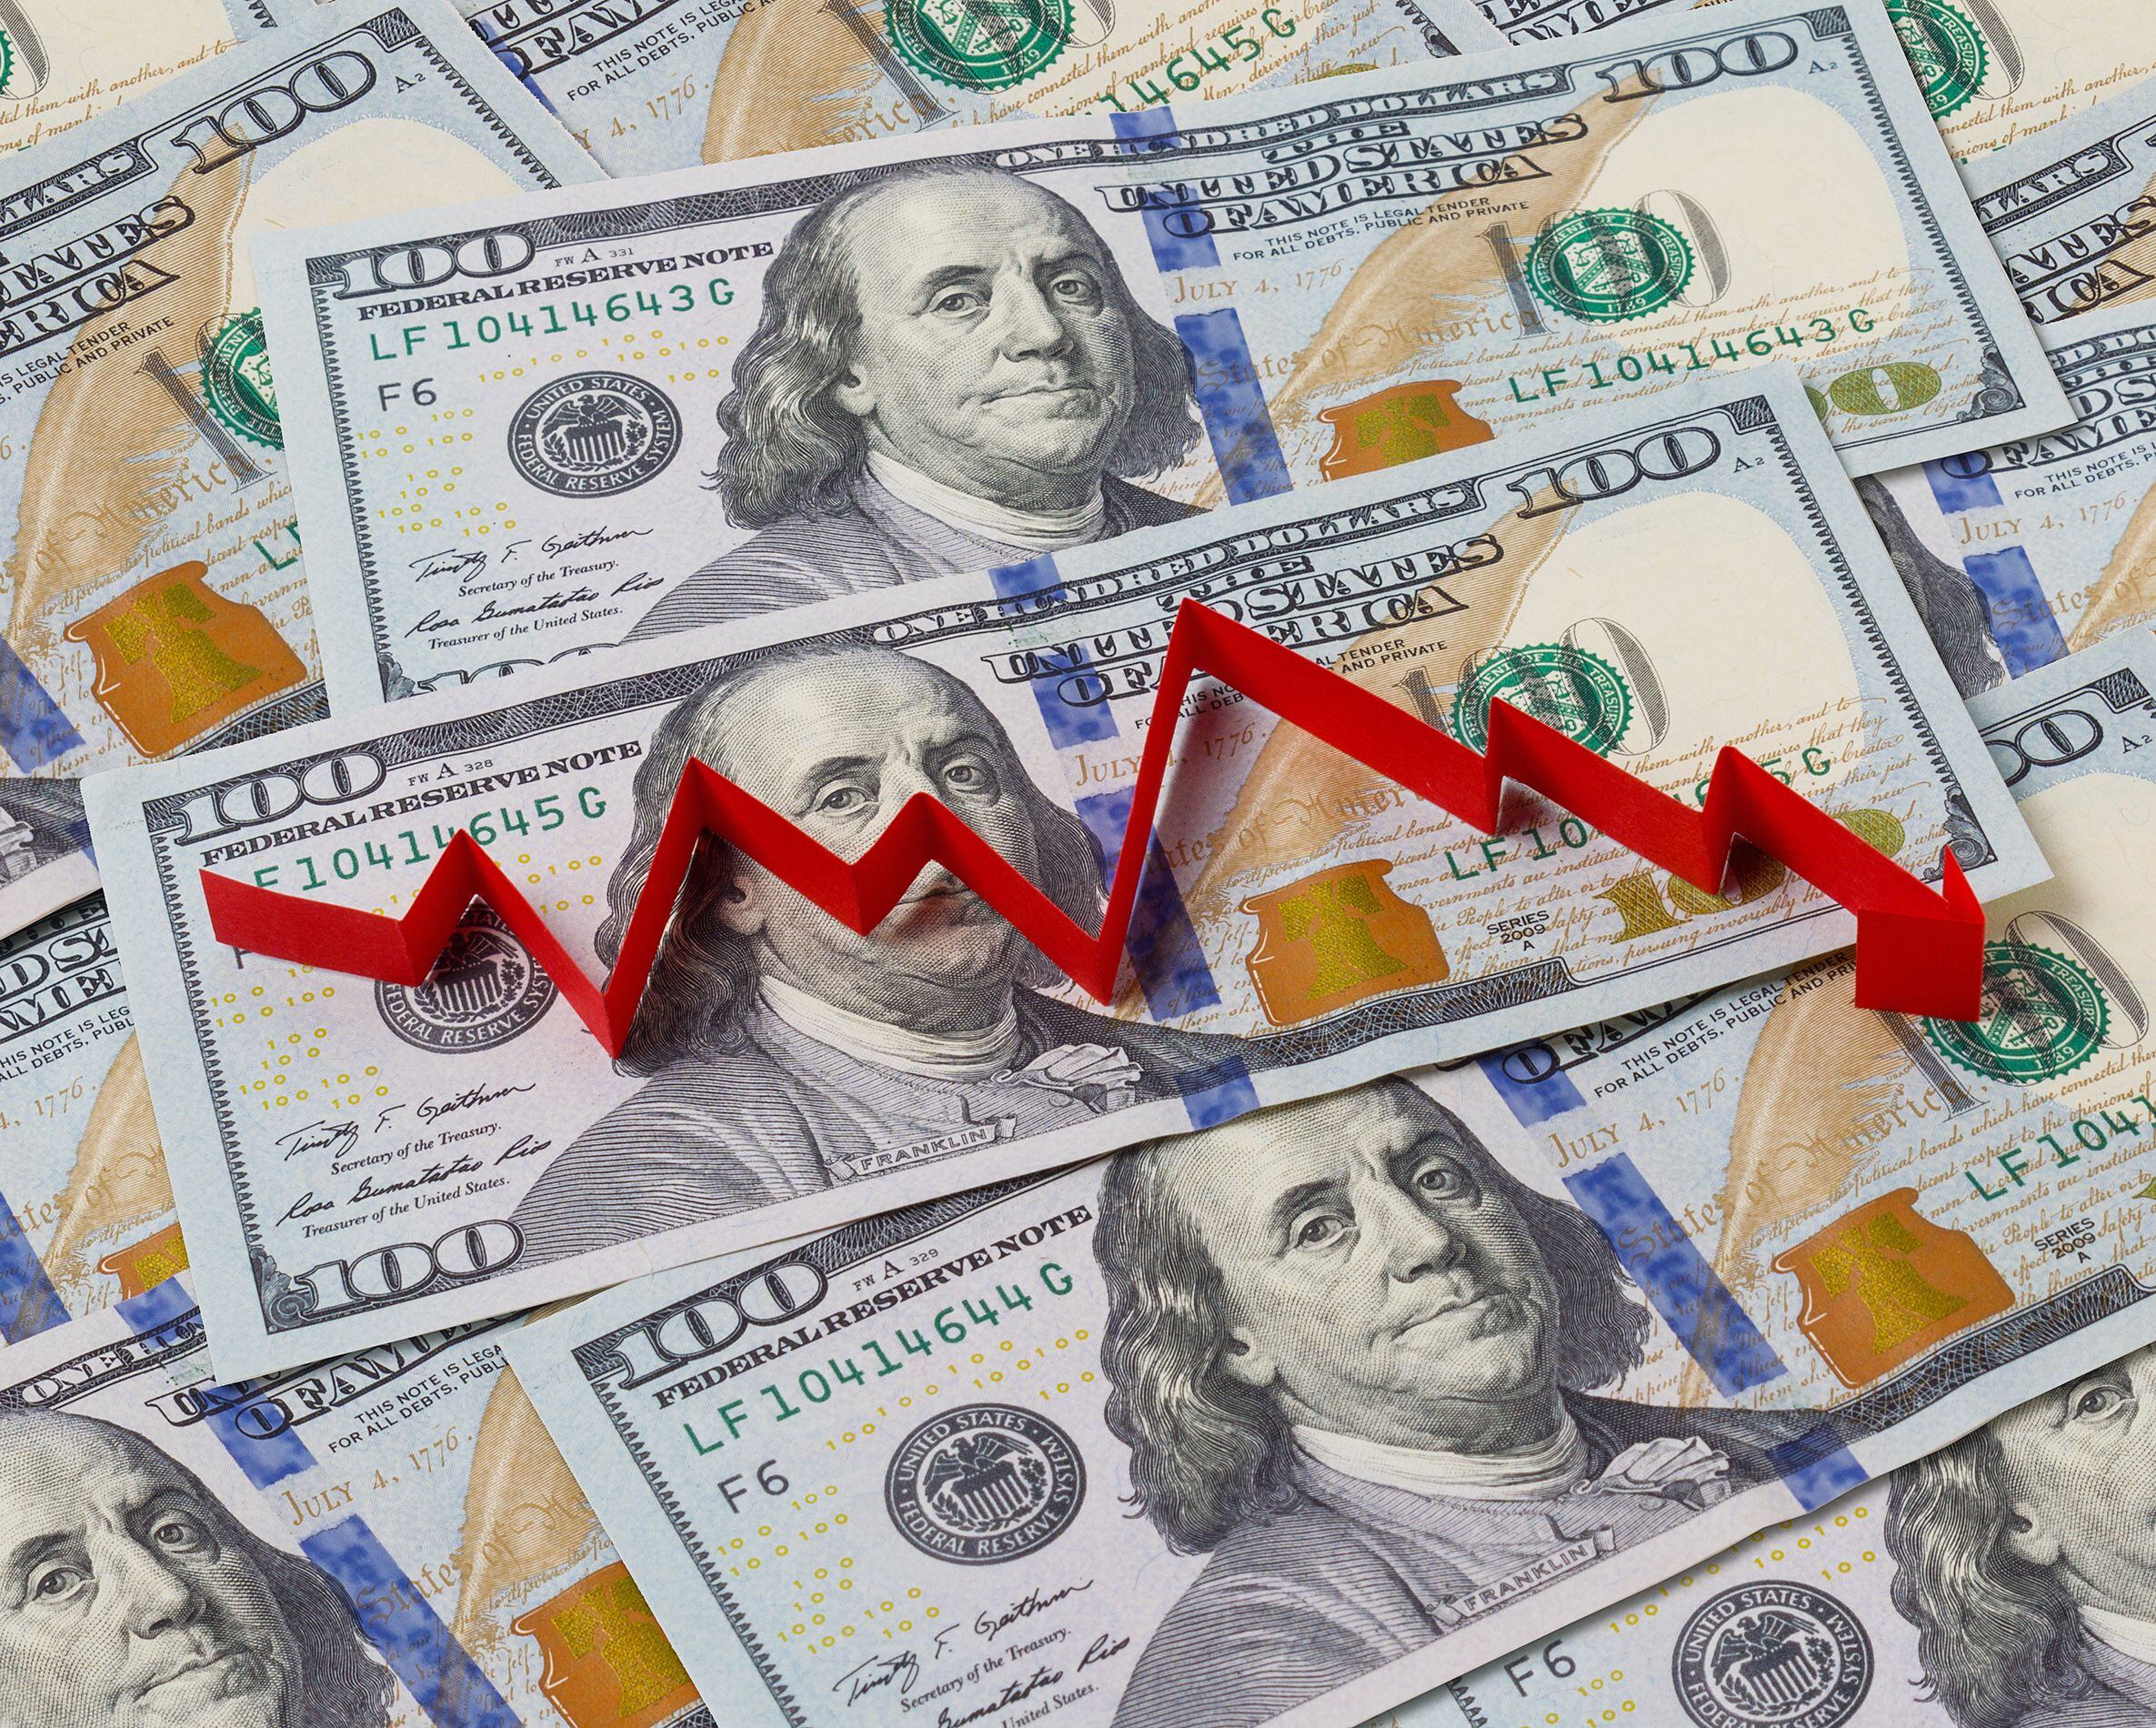 Tipo de cambio en el Monex cayó ¢11,74 en la semana del 10 al 14 de julio.